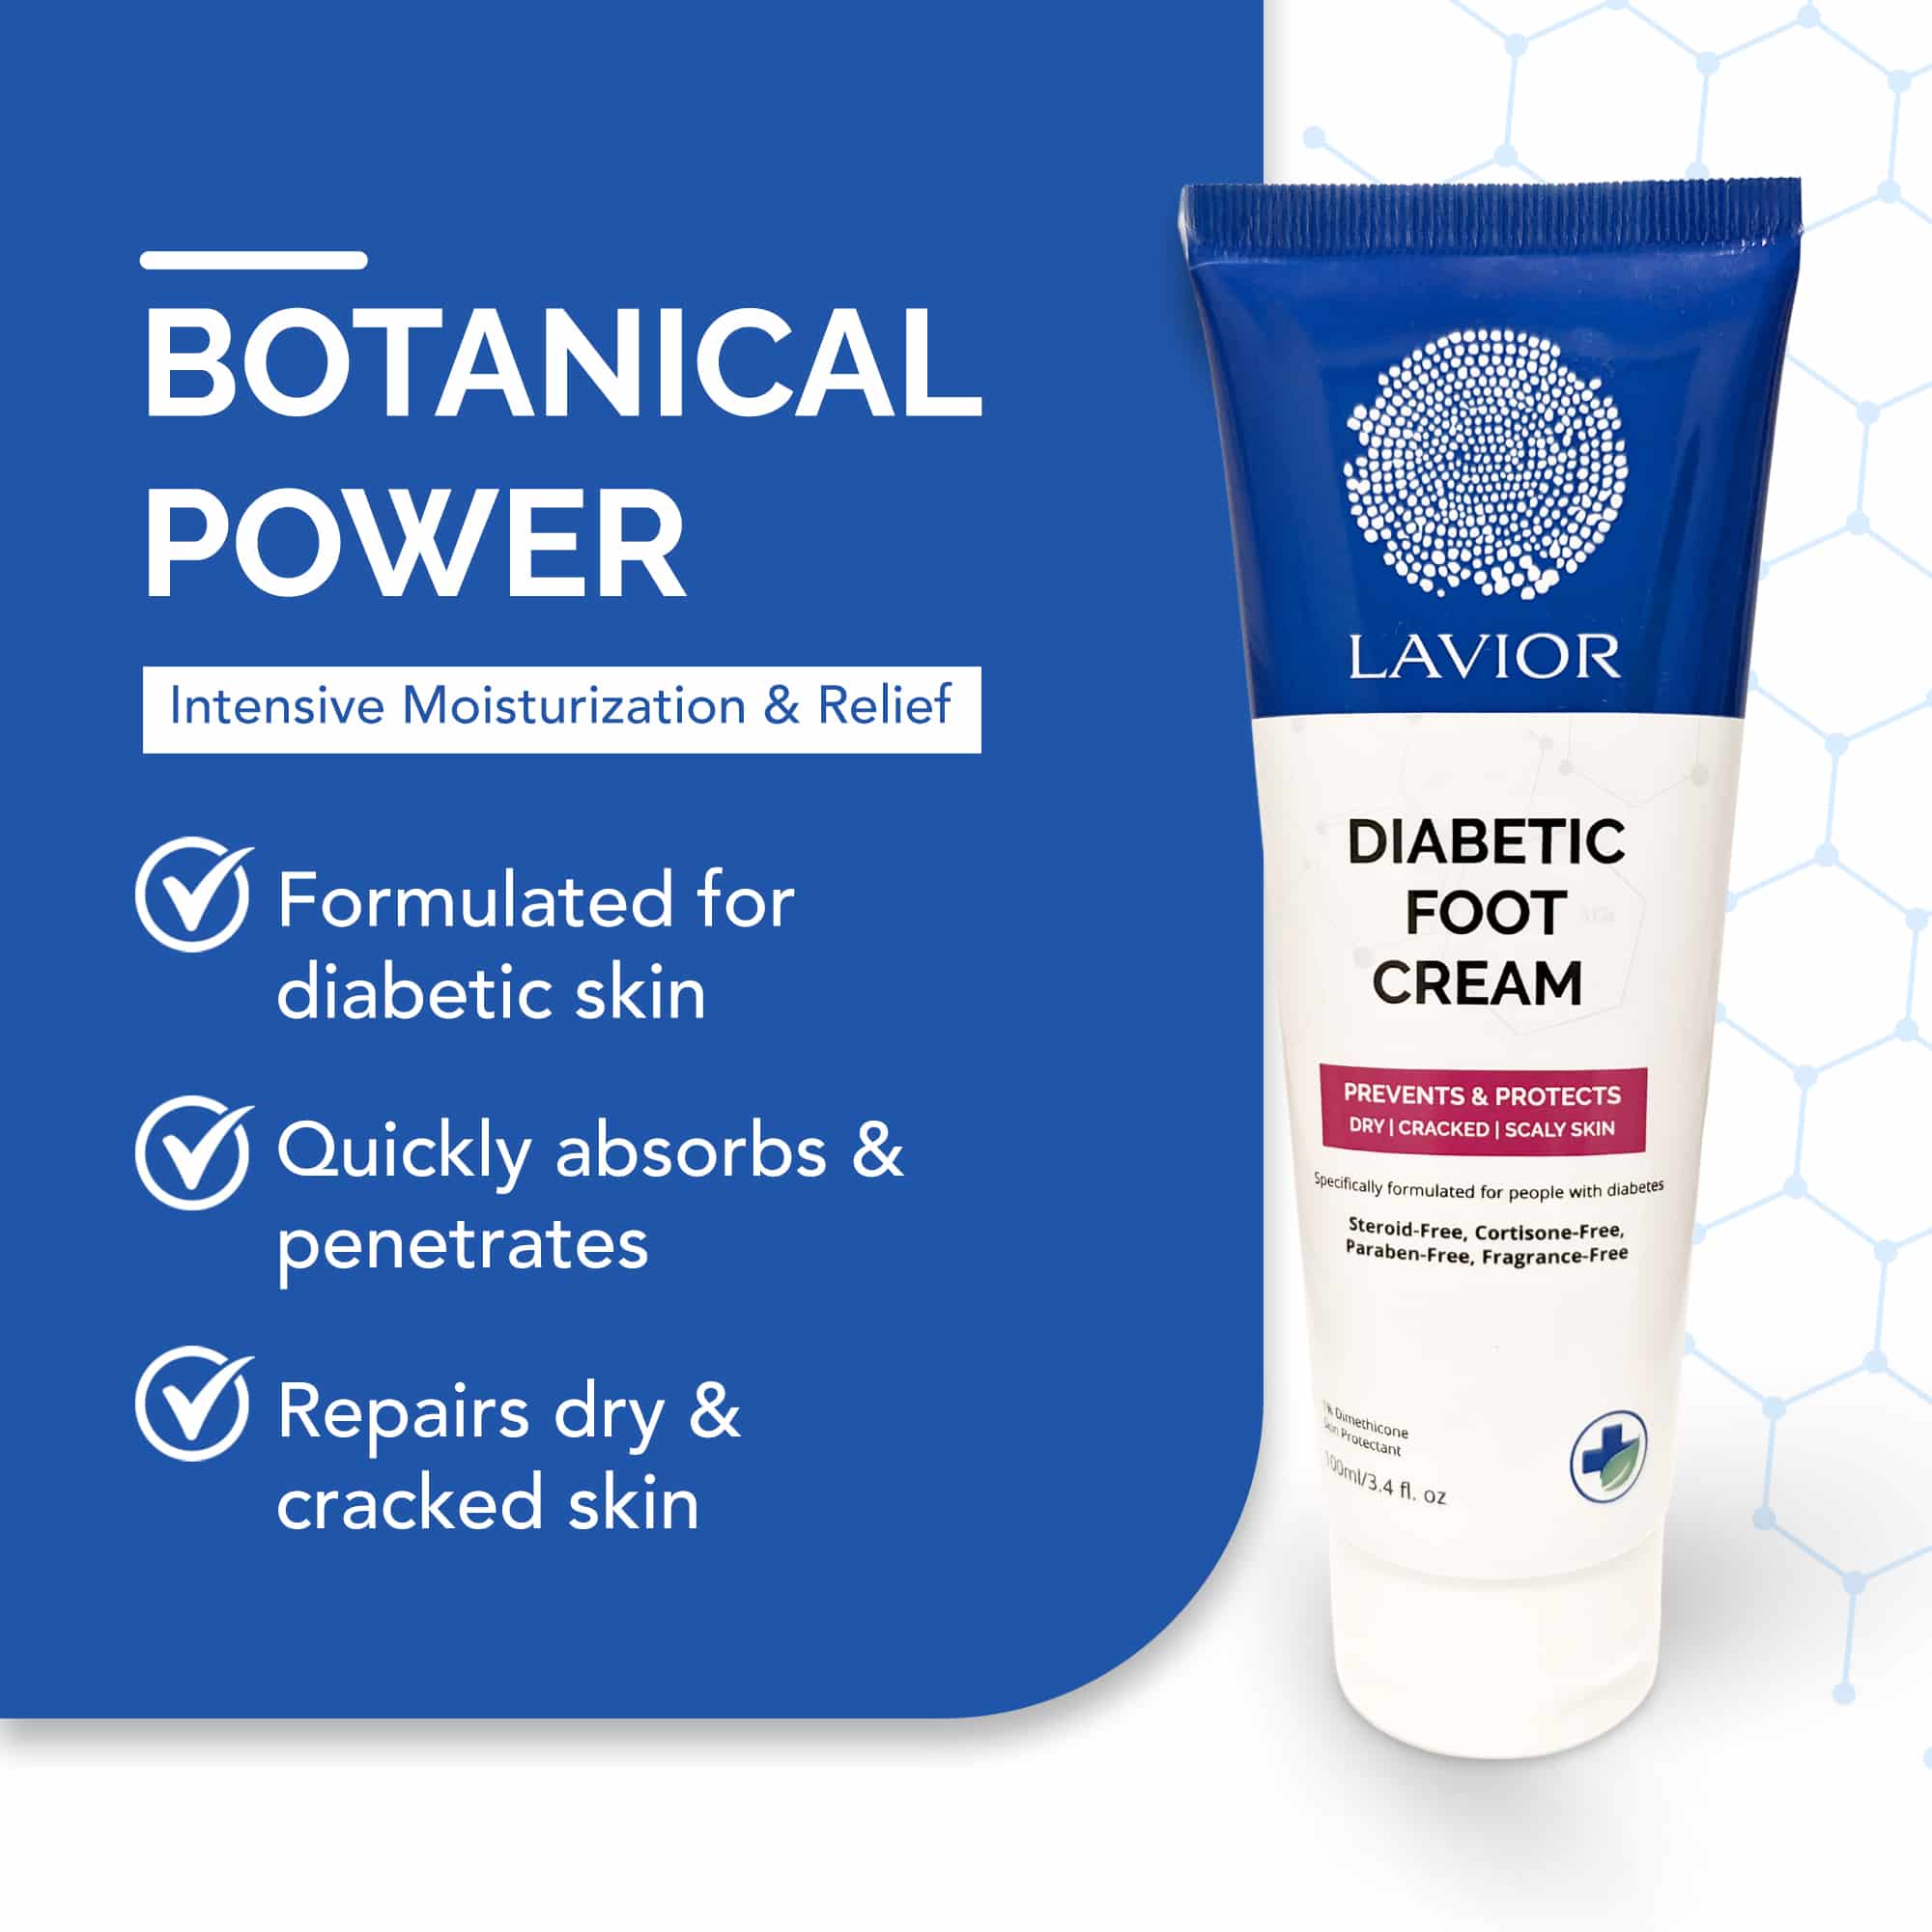 Botanical Power for Dry Skin